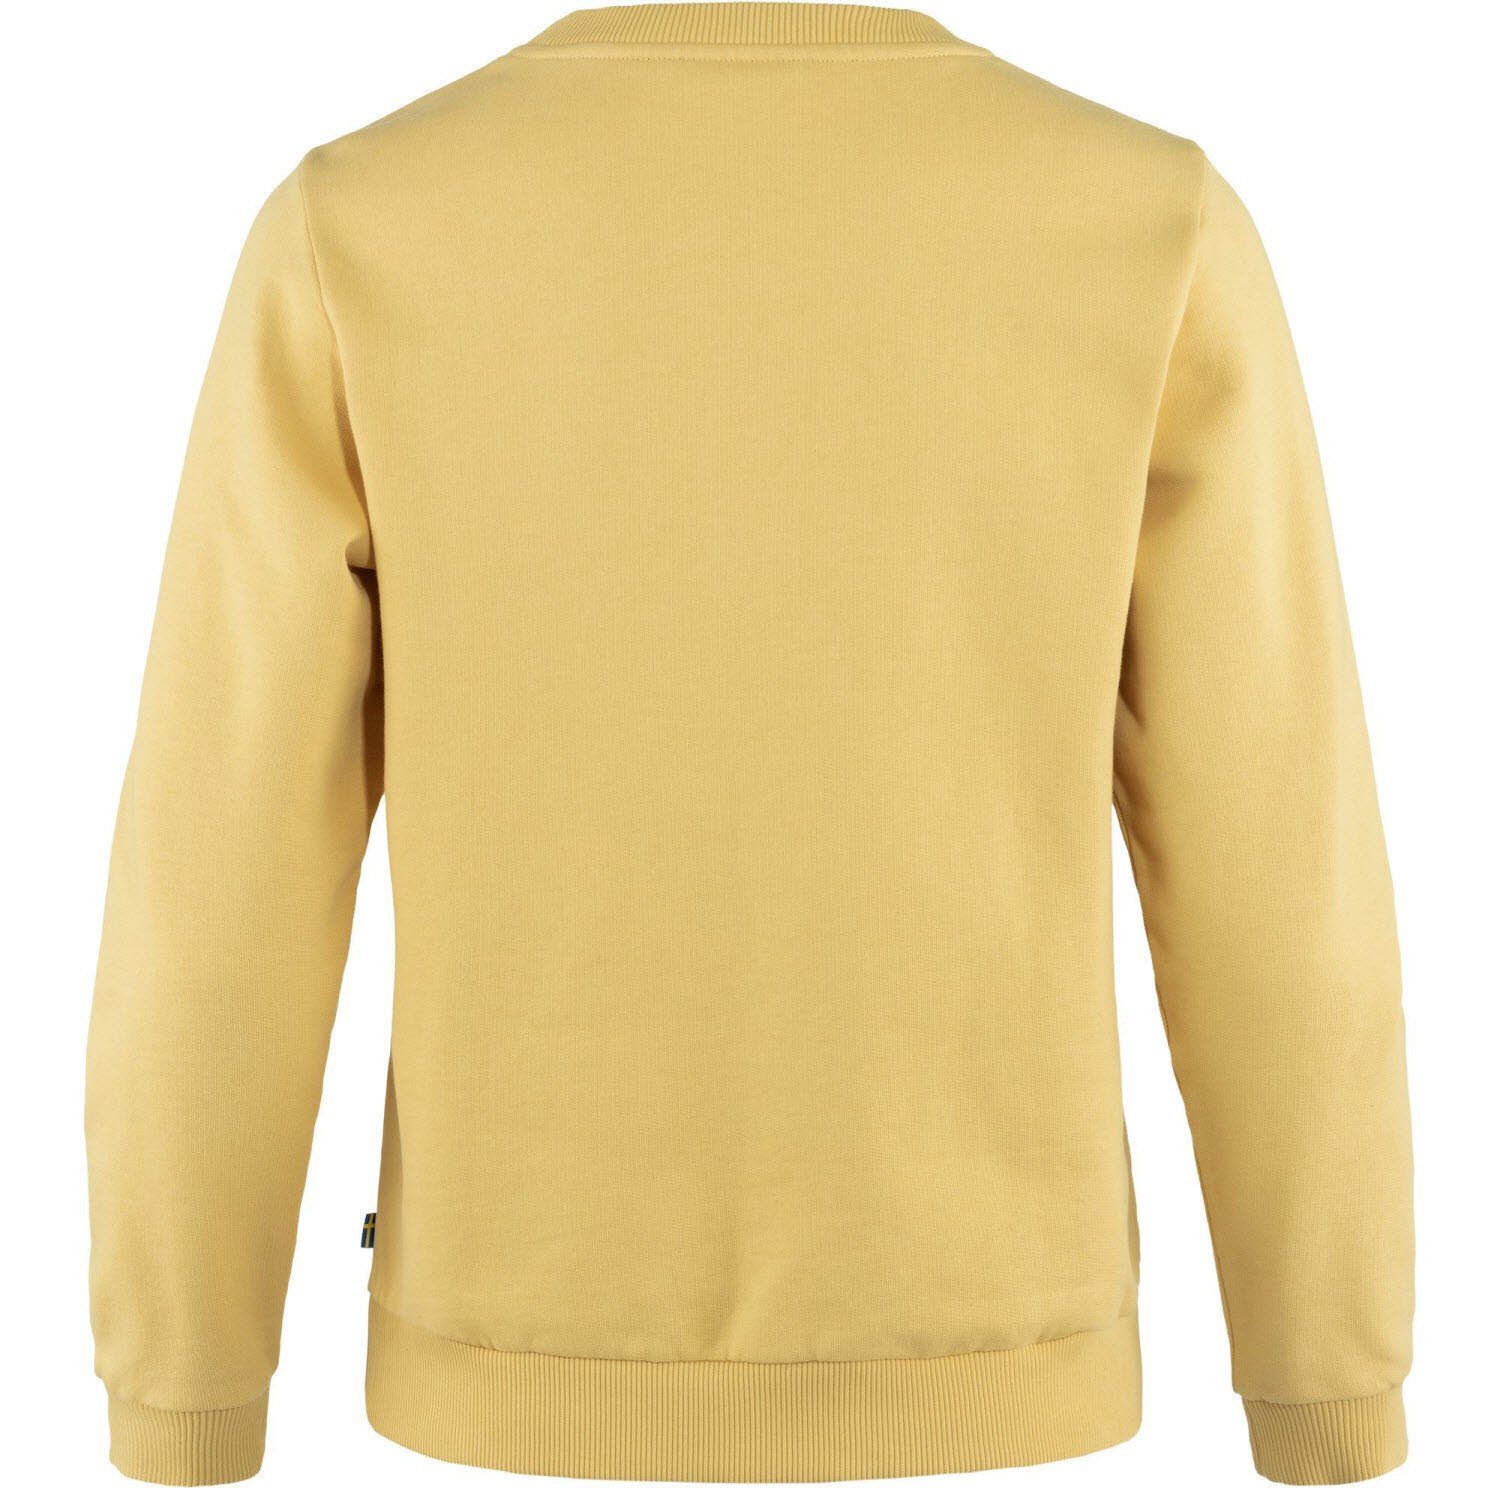 Sweater Damen T-Shirt Fjällräven Yellow Fjällräven Logo Fjällräven Mais